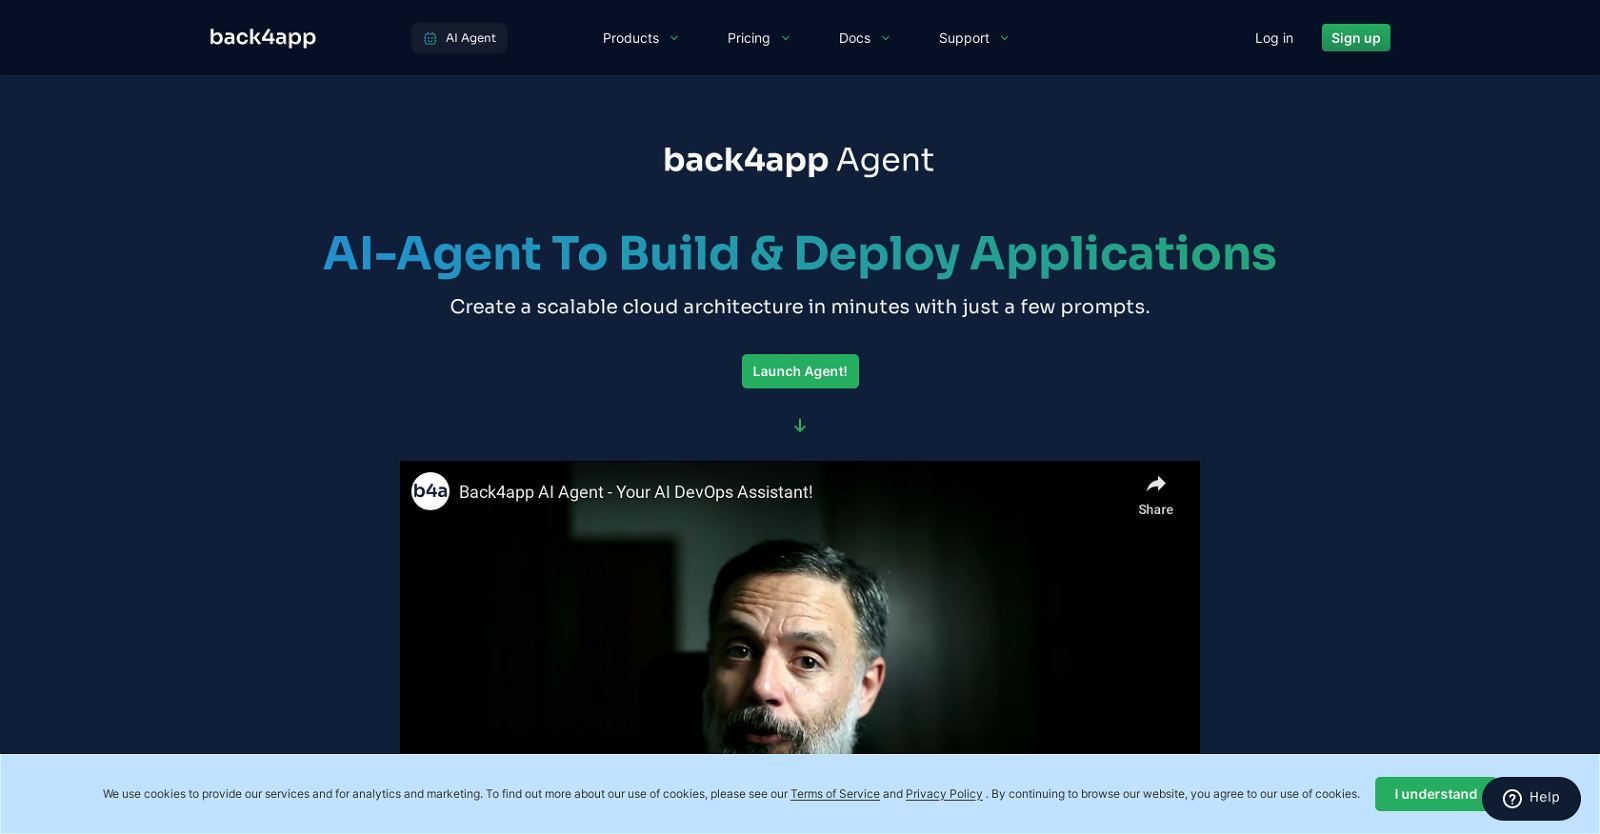 Back4app Agent website